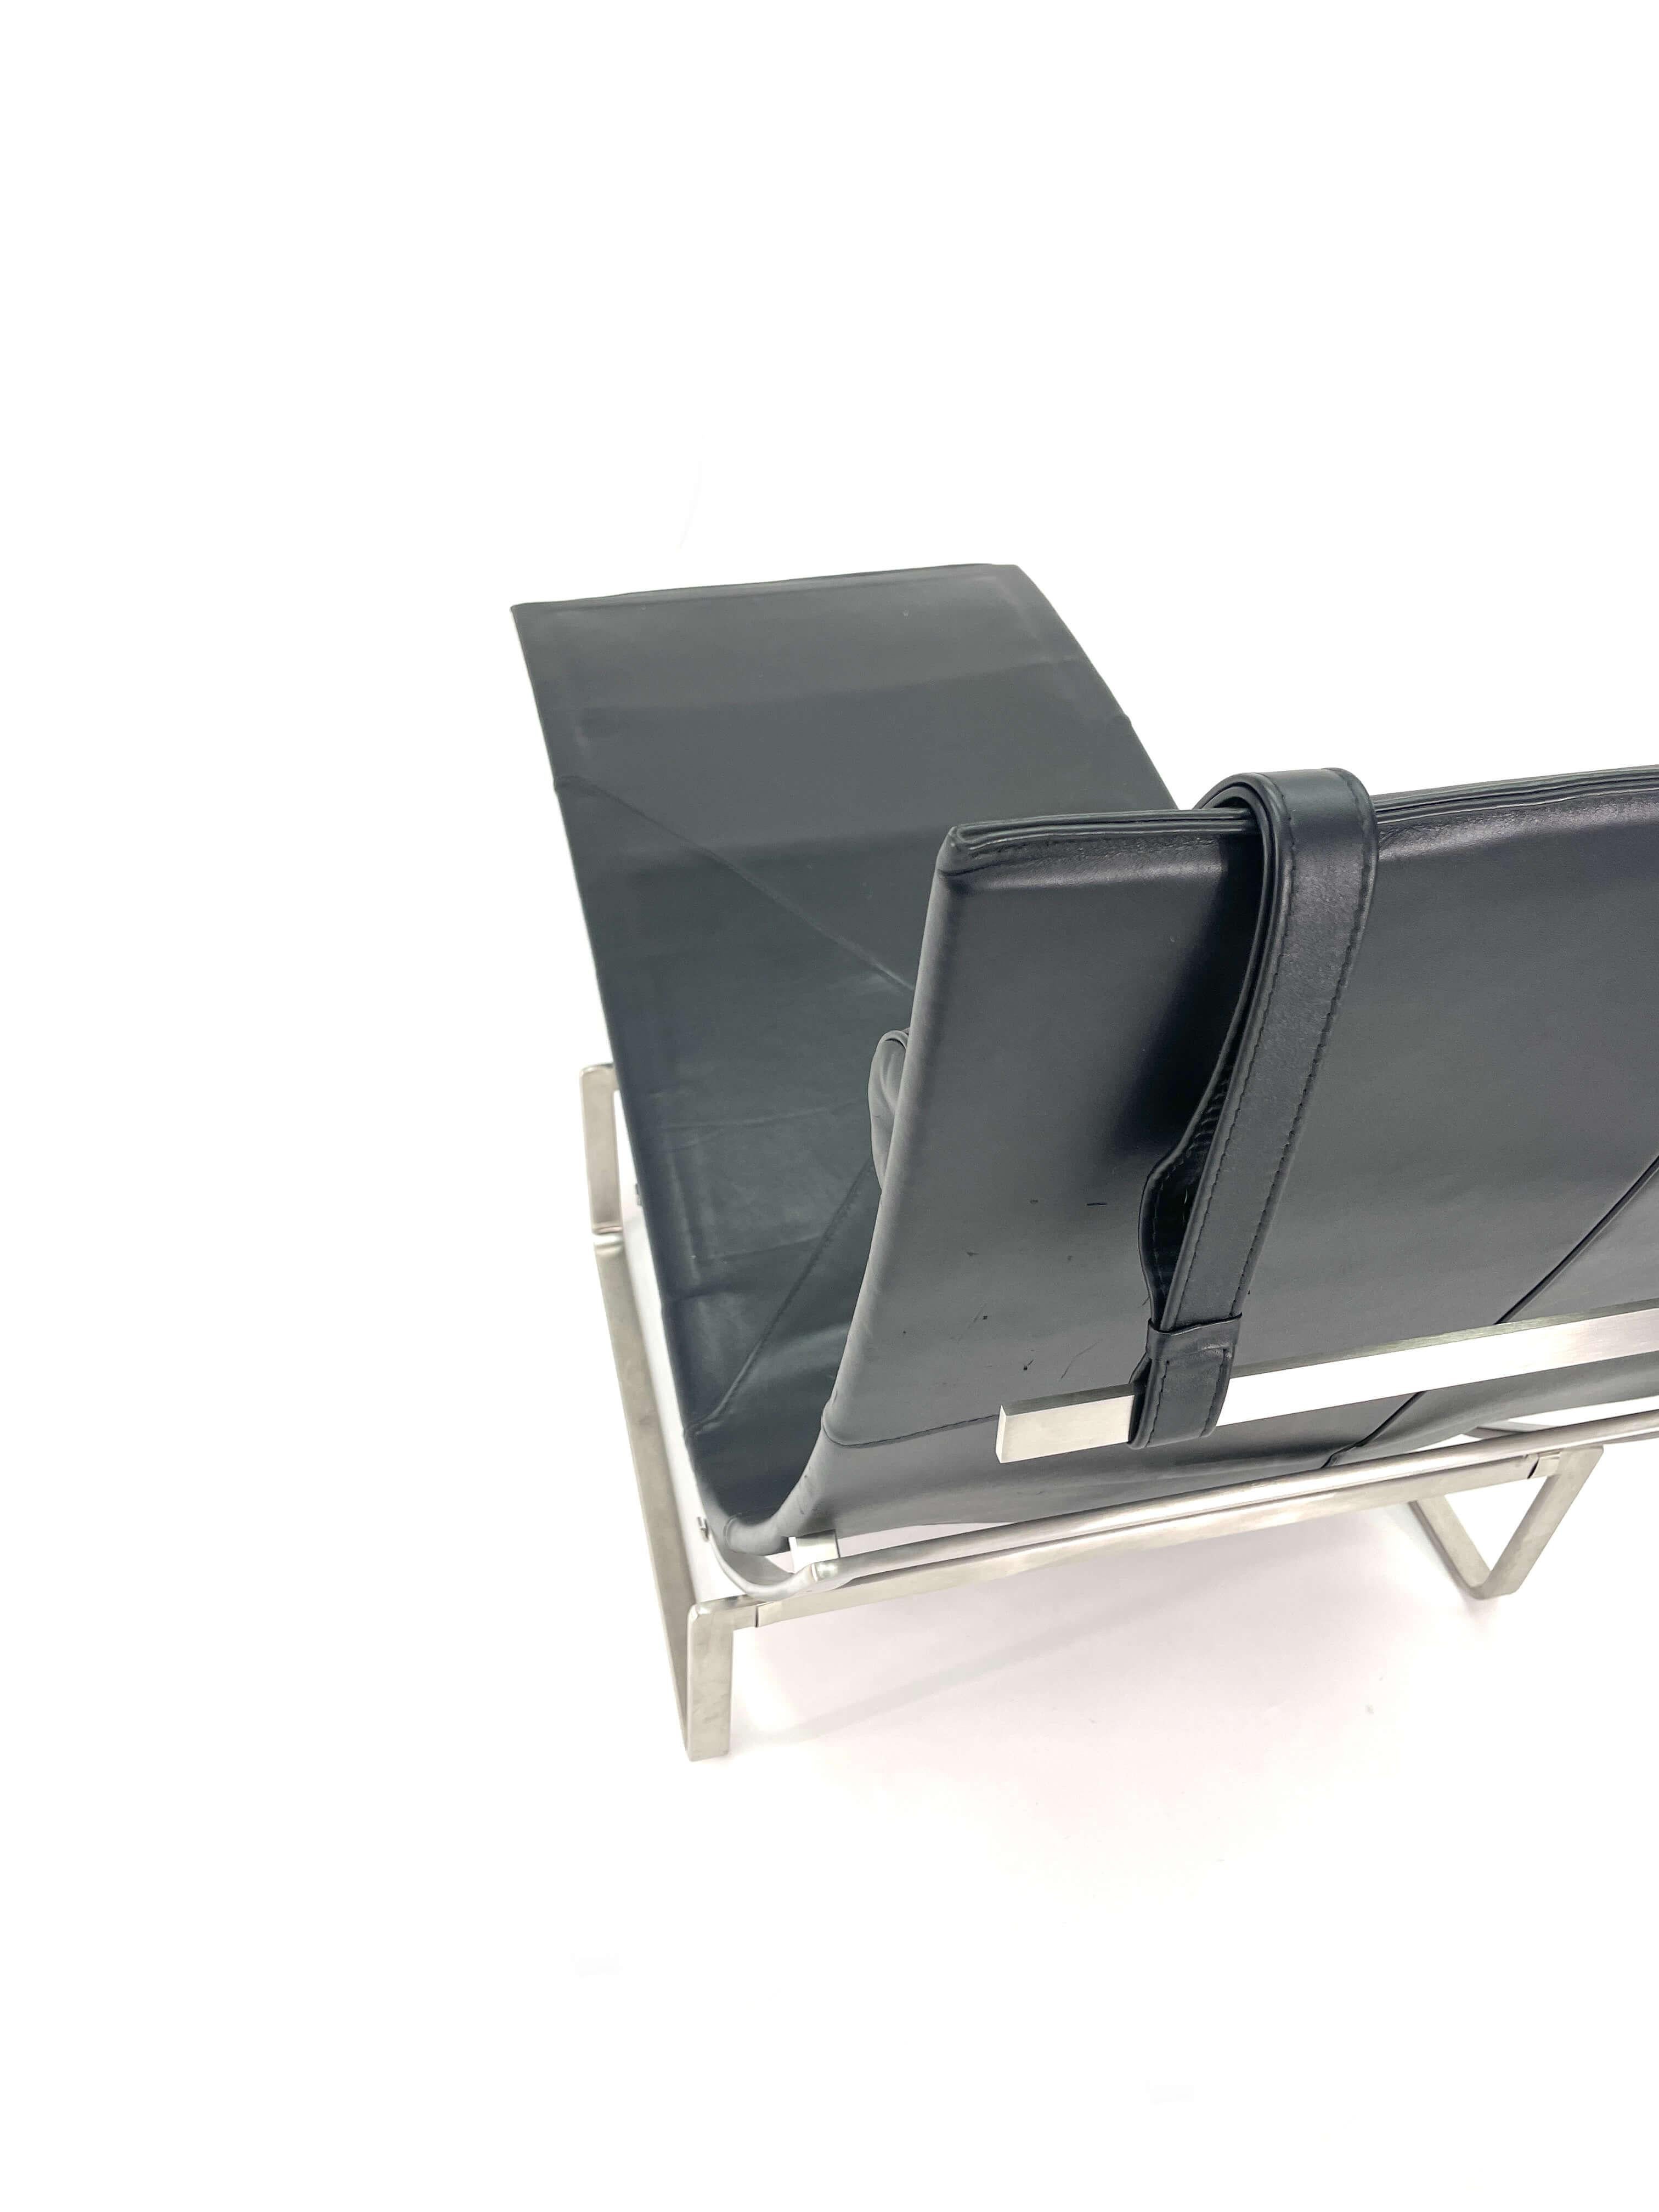 Poul Kjaerholm Chaise Lounge Model PK24 for Fritz Hansen For Sale 1